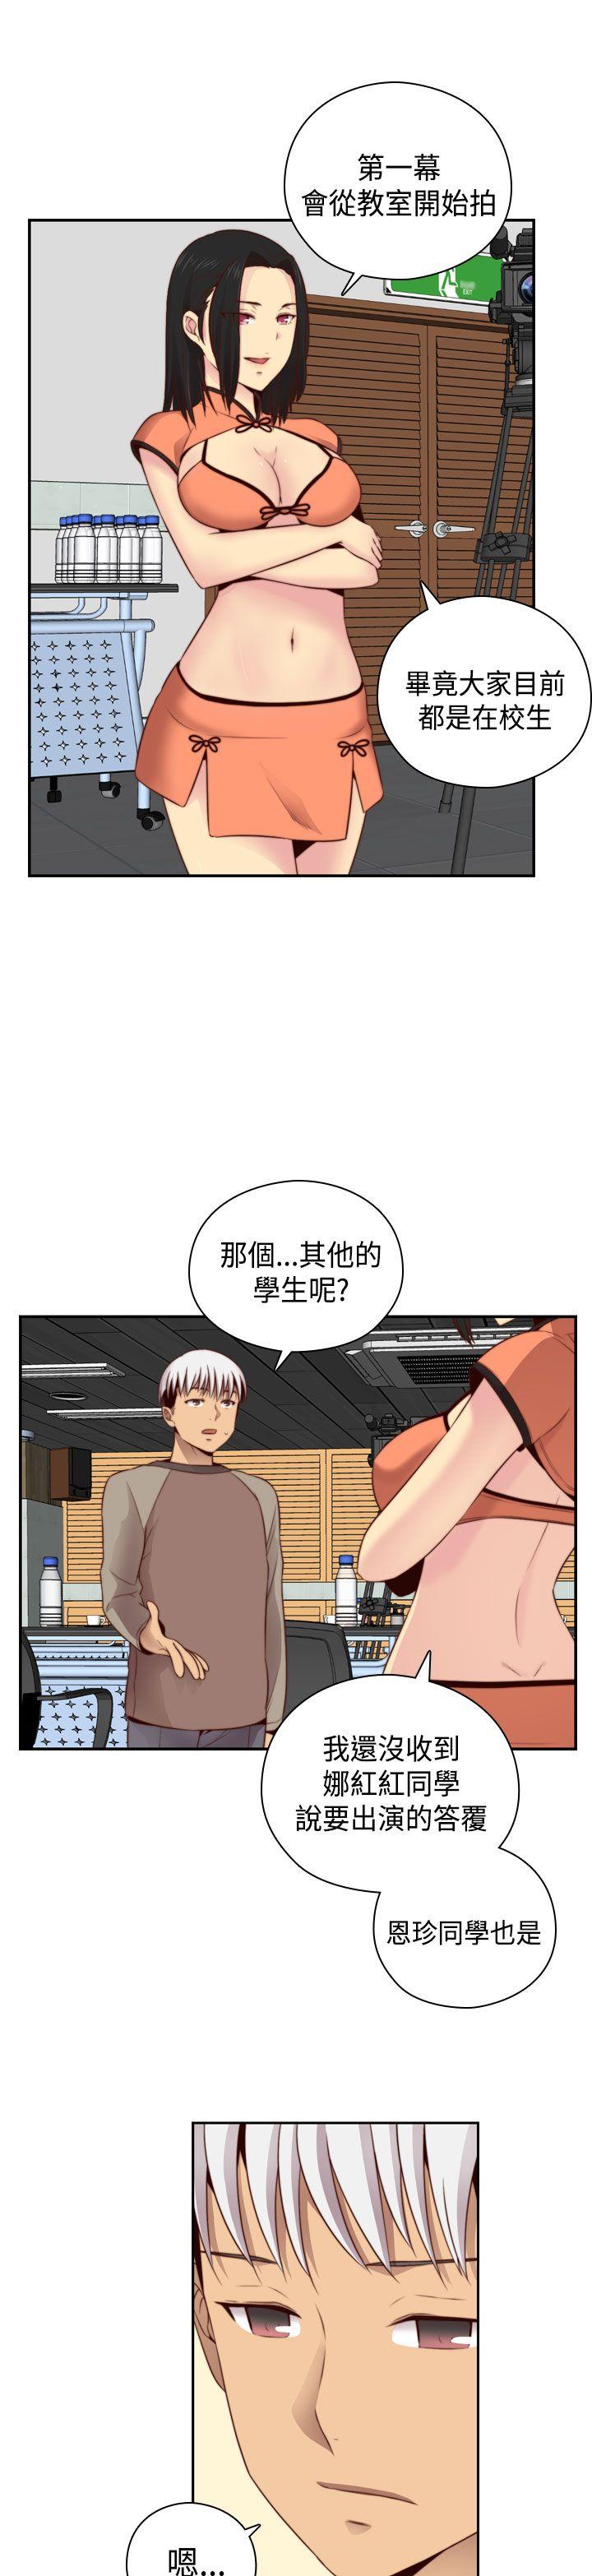 韩国污漫画 H校園 第55话 31